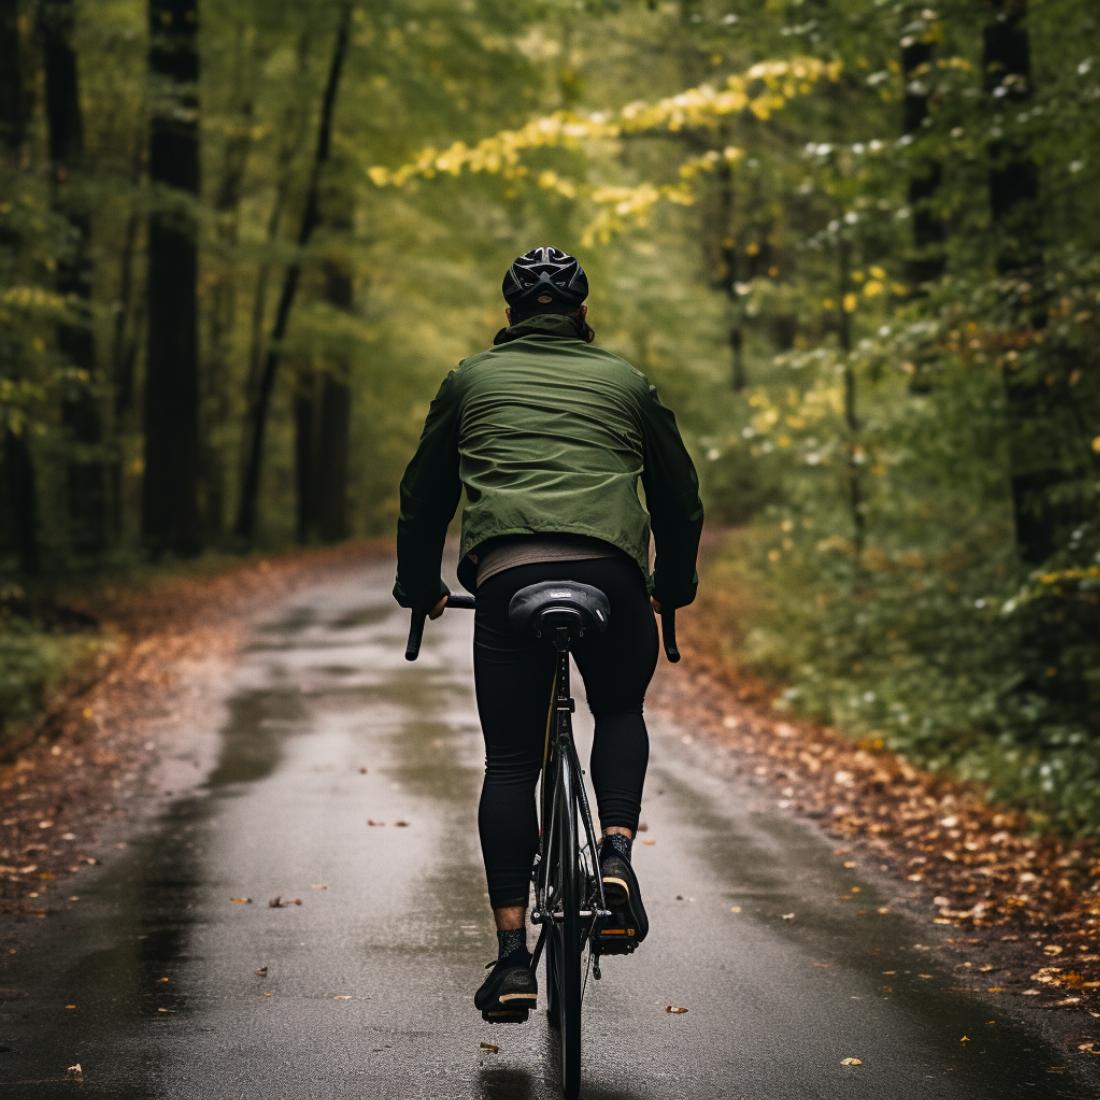 un homme portant une chemise verte et un pantalon de survêtement noir roulant à vélo sur une piste cyclable boisée. Il fait jour mais le ciel est couvert. La photo est prise de dos